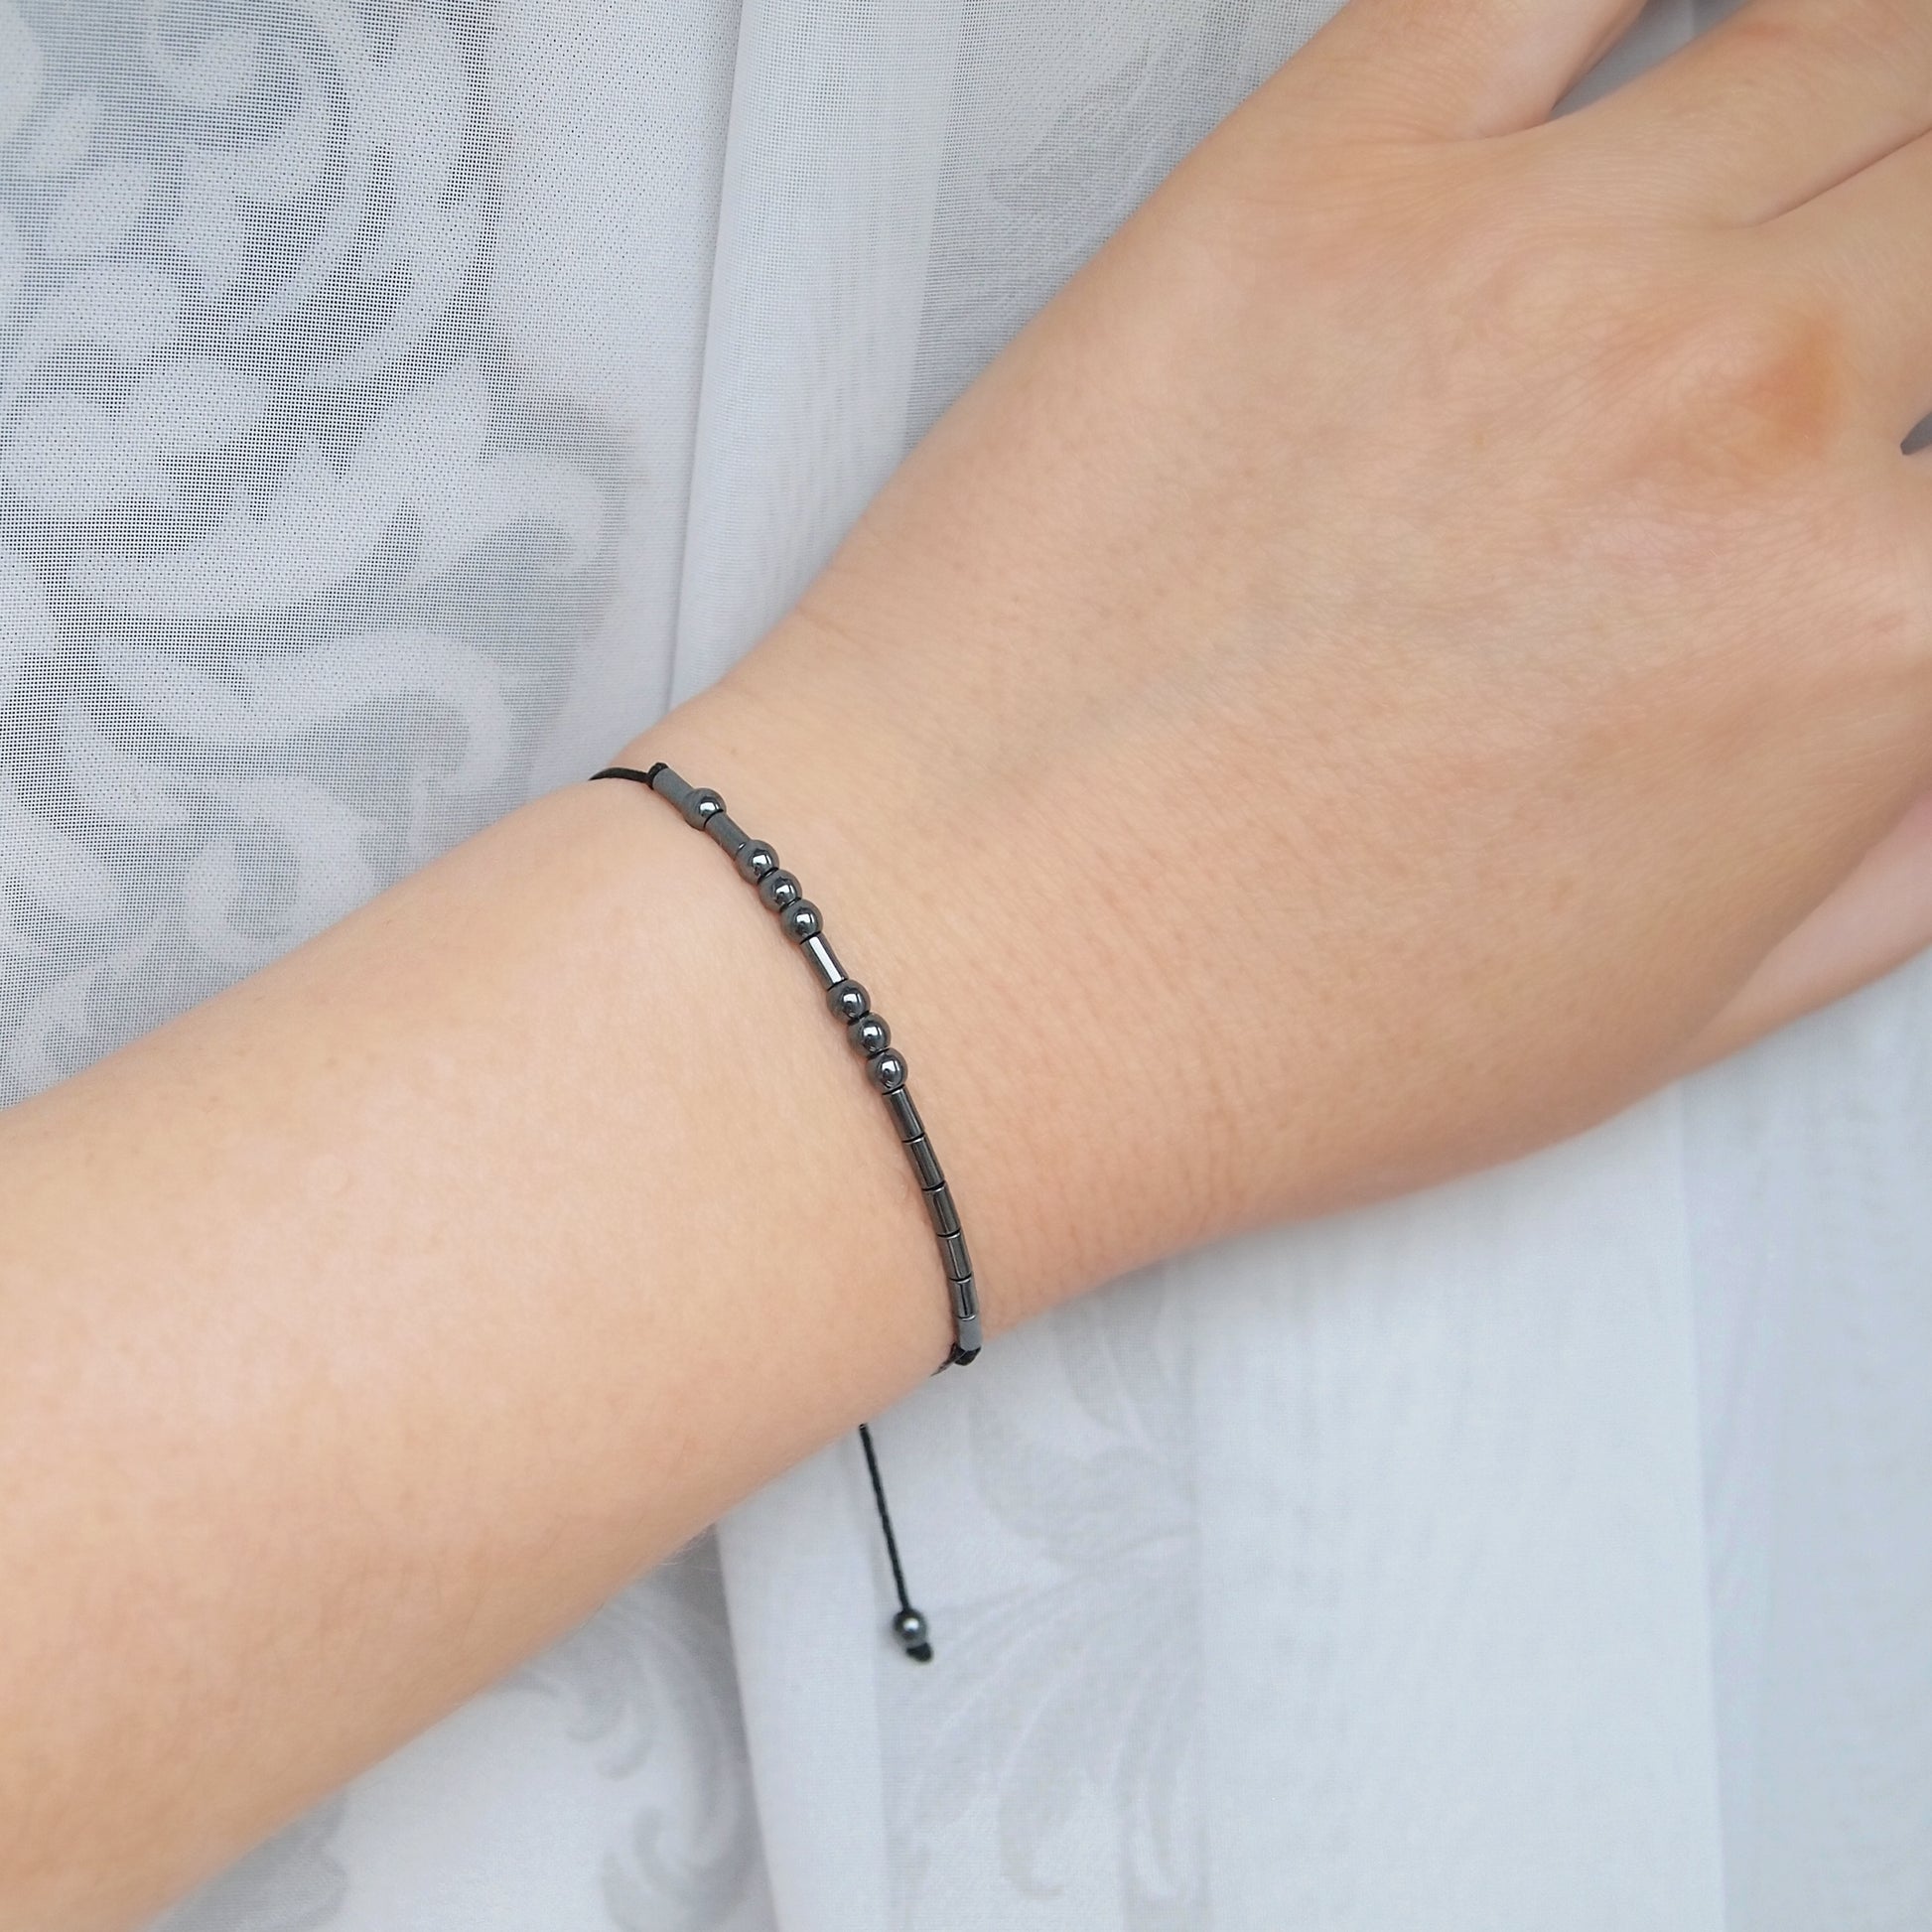 morse code custom bracelet, meaningful gift